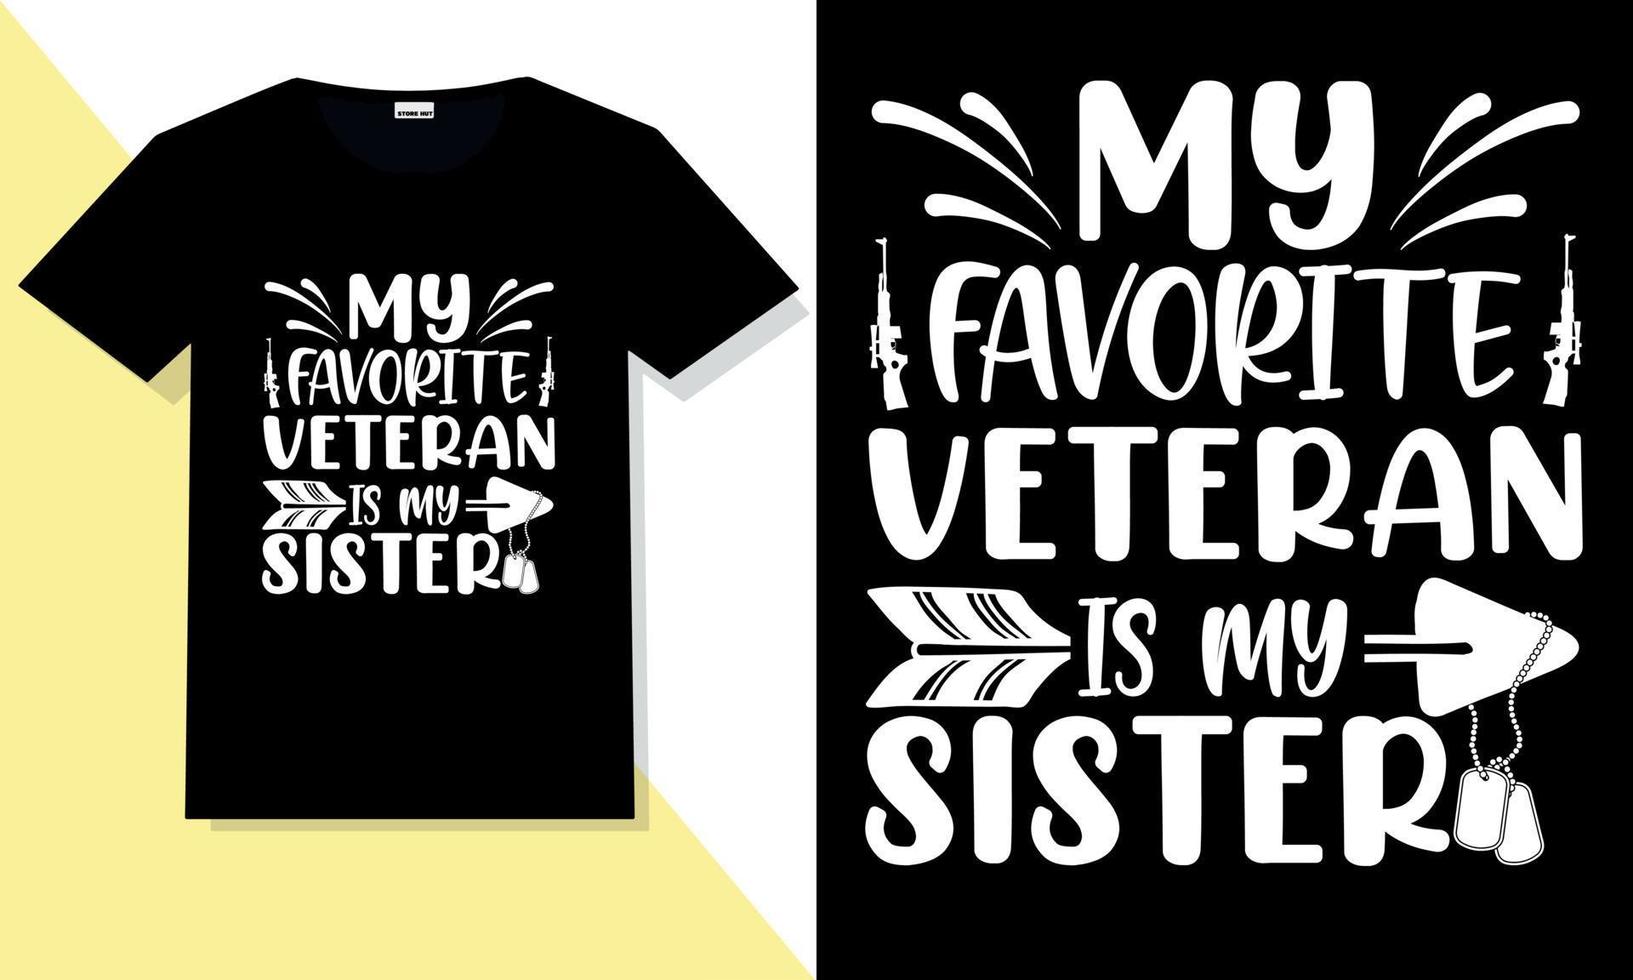 typografisches svg-t-shirt des amerikanischen veteranen vektor